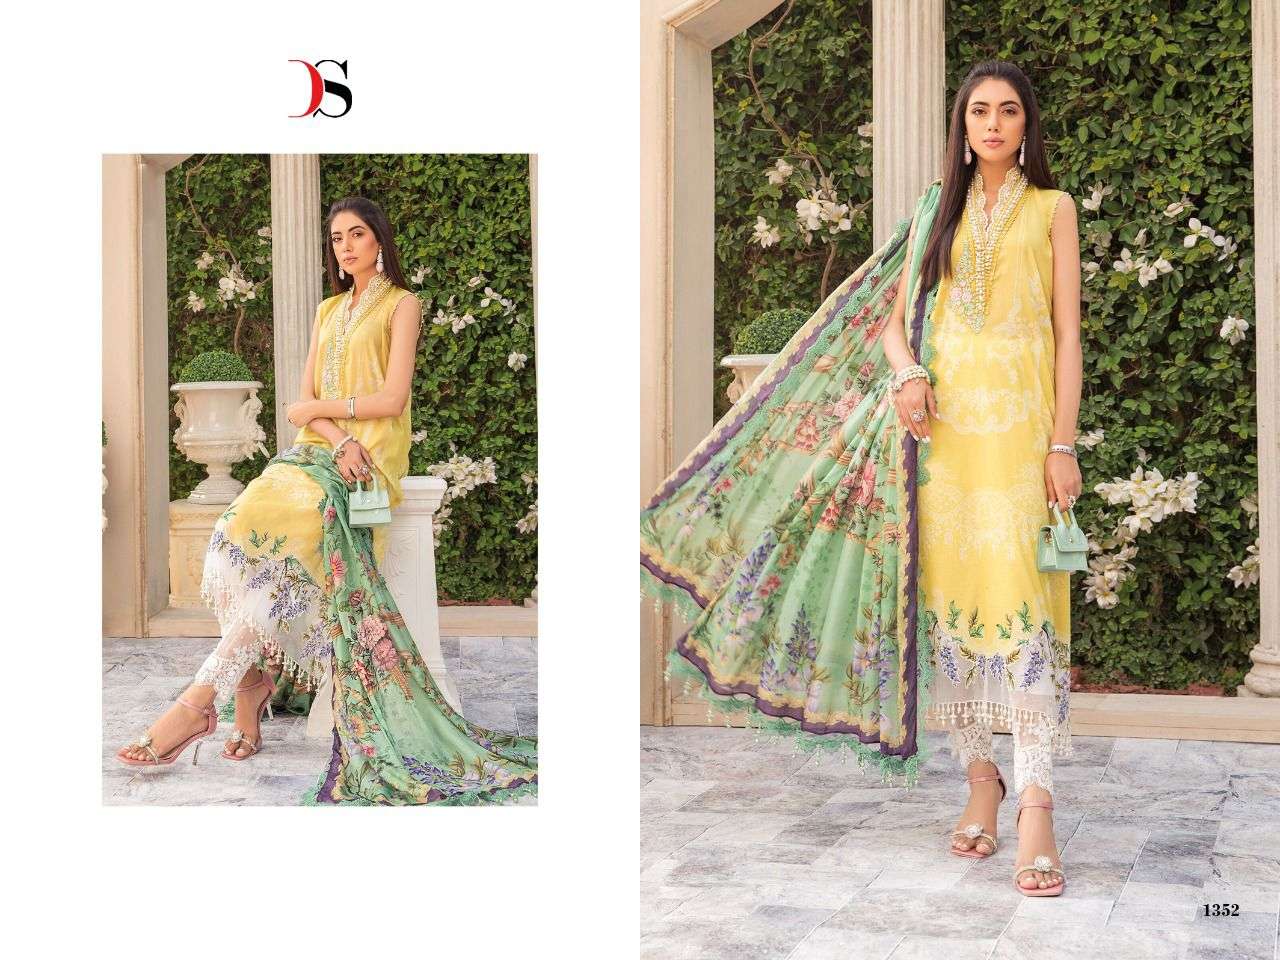 deepsy suits mariab mprint vol 22 cotton pakistani suits wholesaler surat